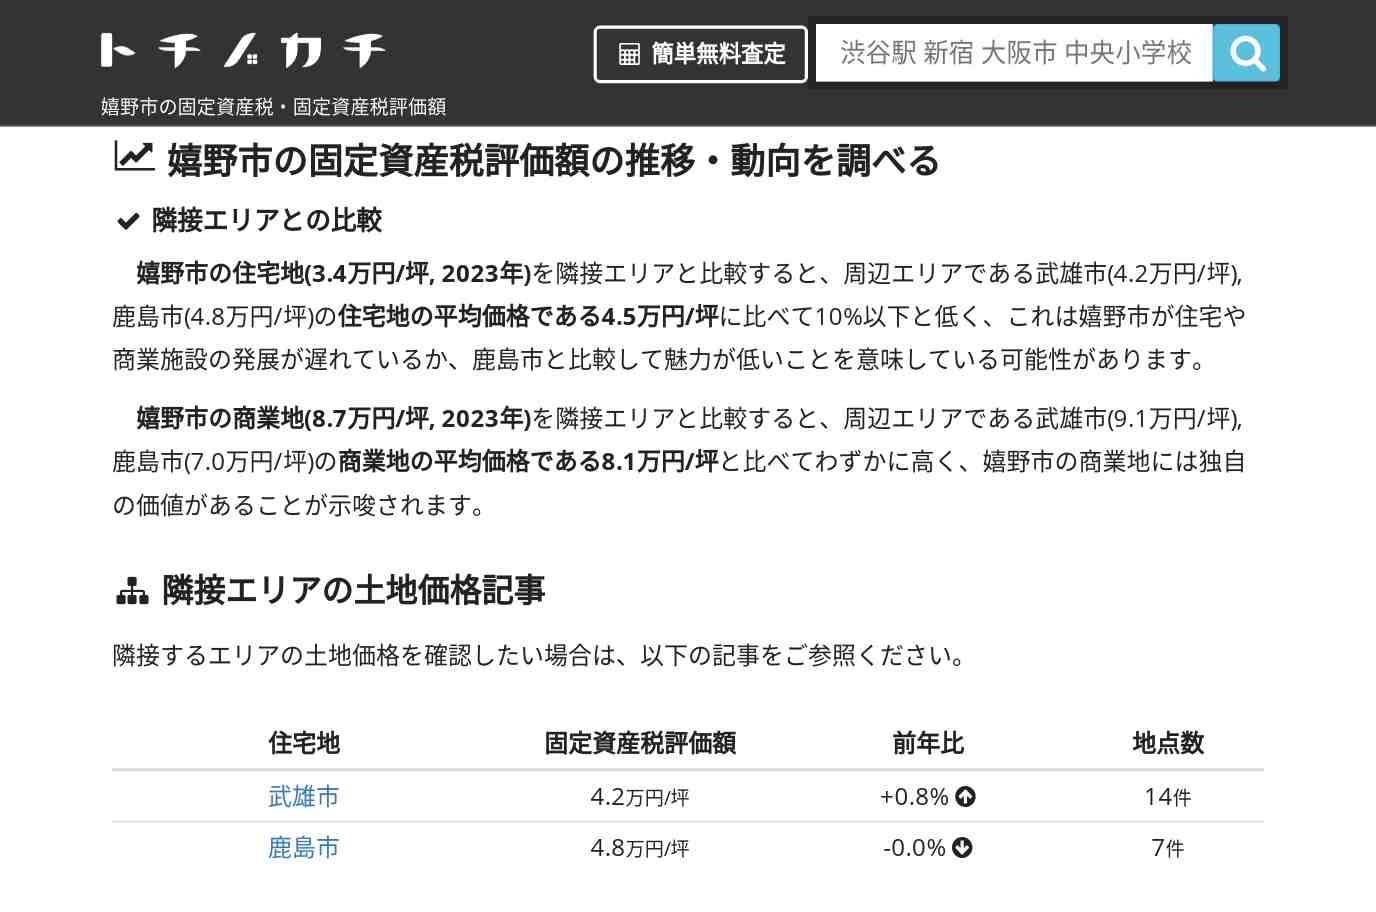 吉田中学校(佐賀県 嬉野市)周辺の固定資産税・固定資産税評価額 | トチノカチ